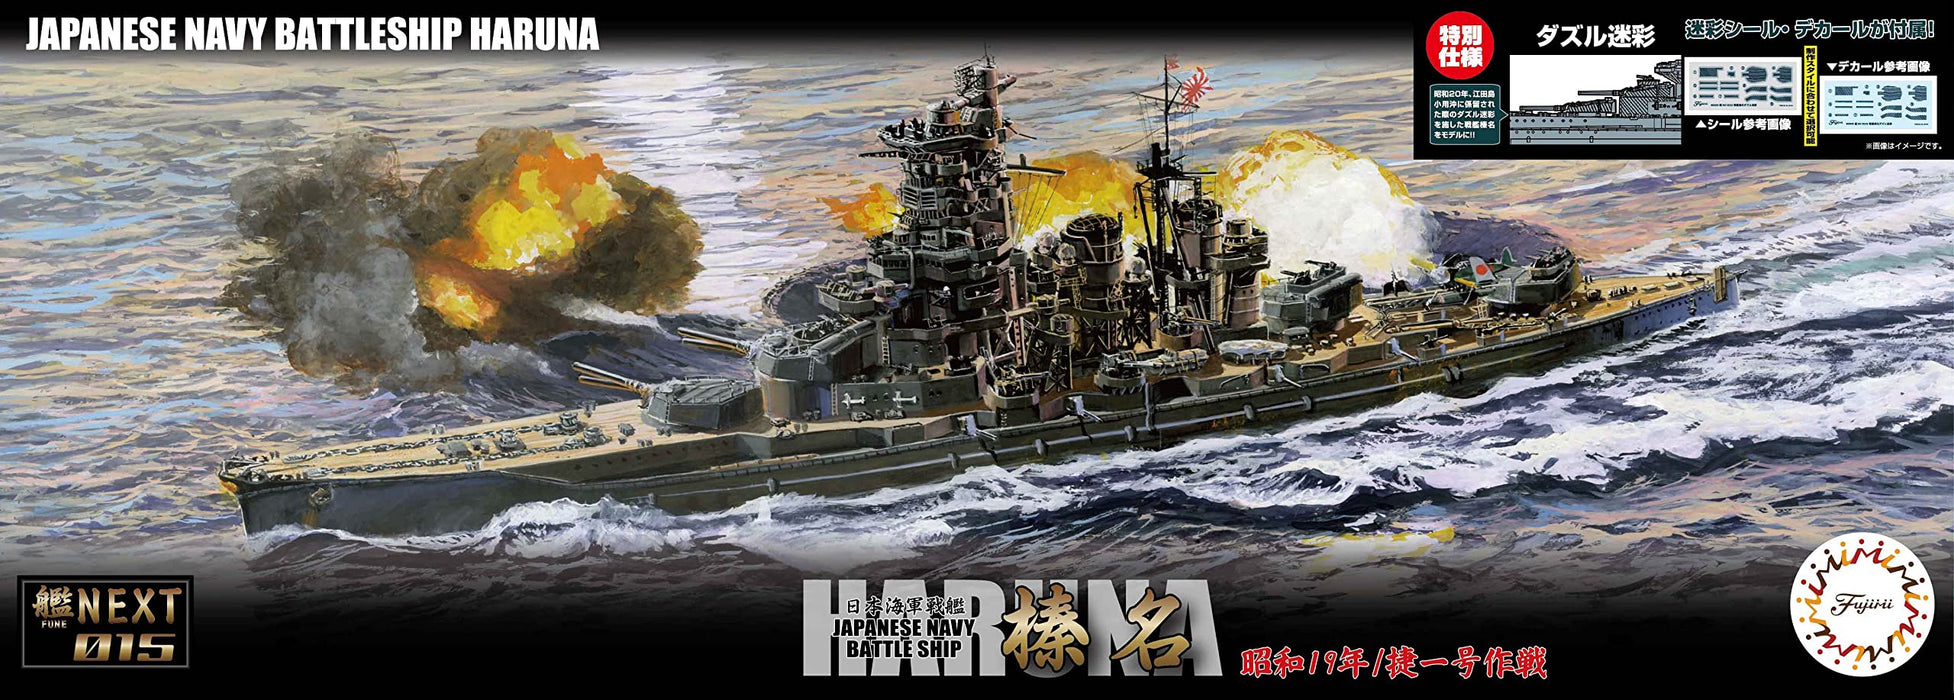 Fujimi-Modell 1/700 Japanisches Marine-Schlachtschiff Haruna 1944 Schiff Nx-15 Ex-2 Dazzle Camo